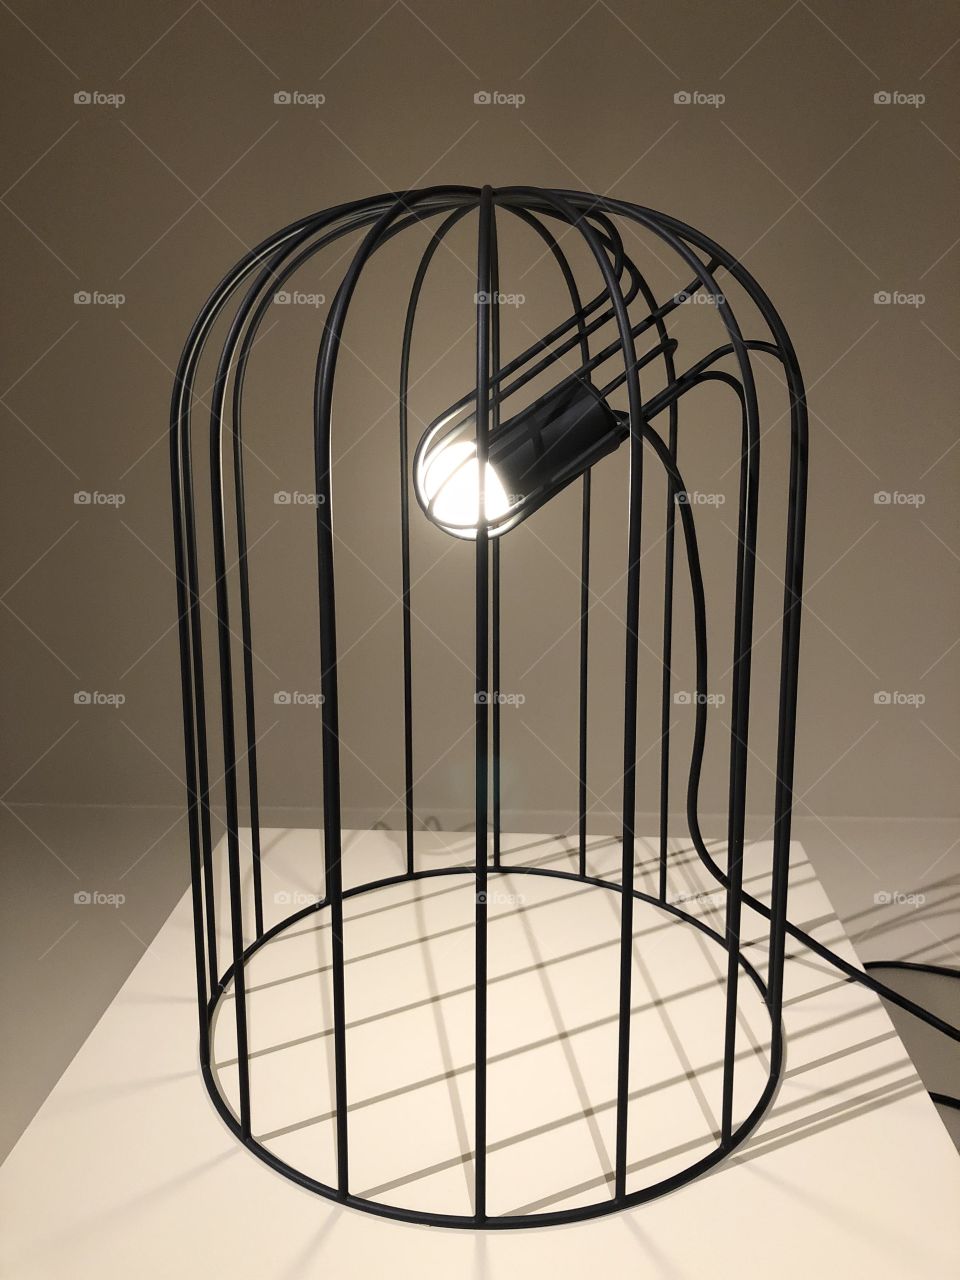 Light, cage